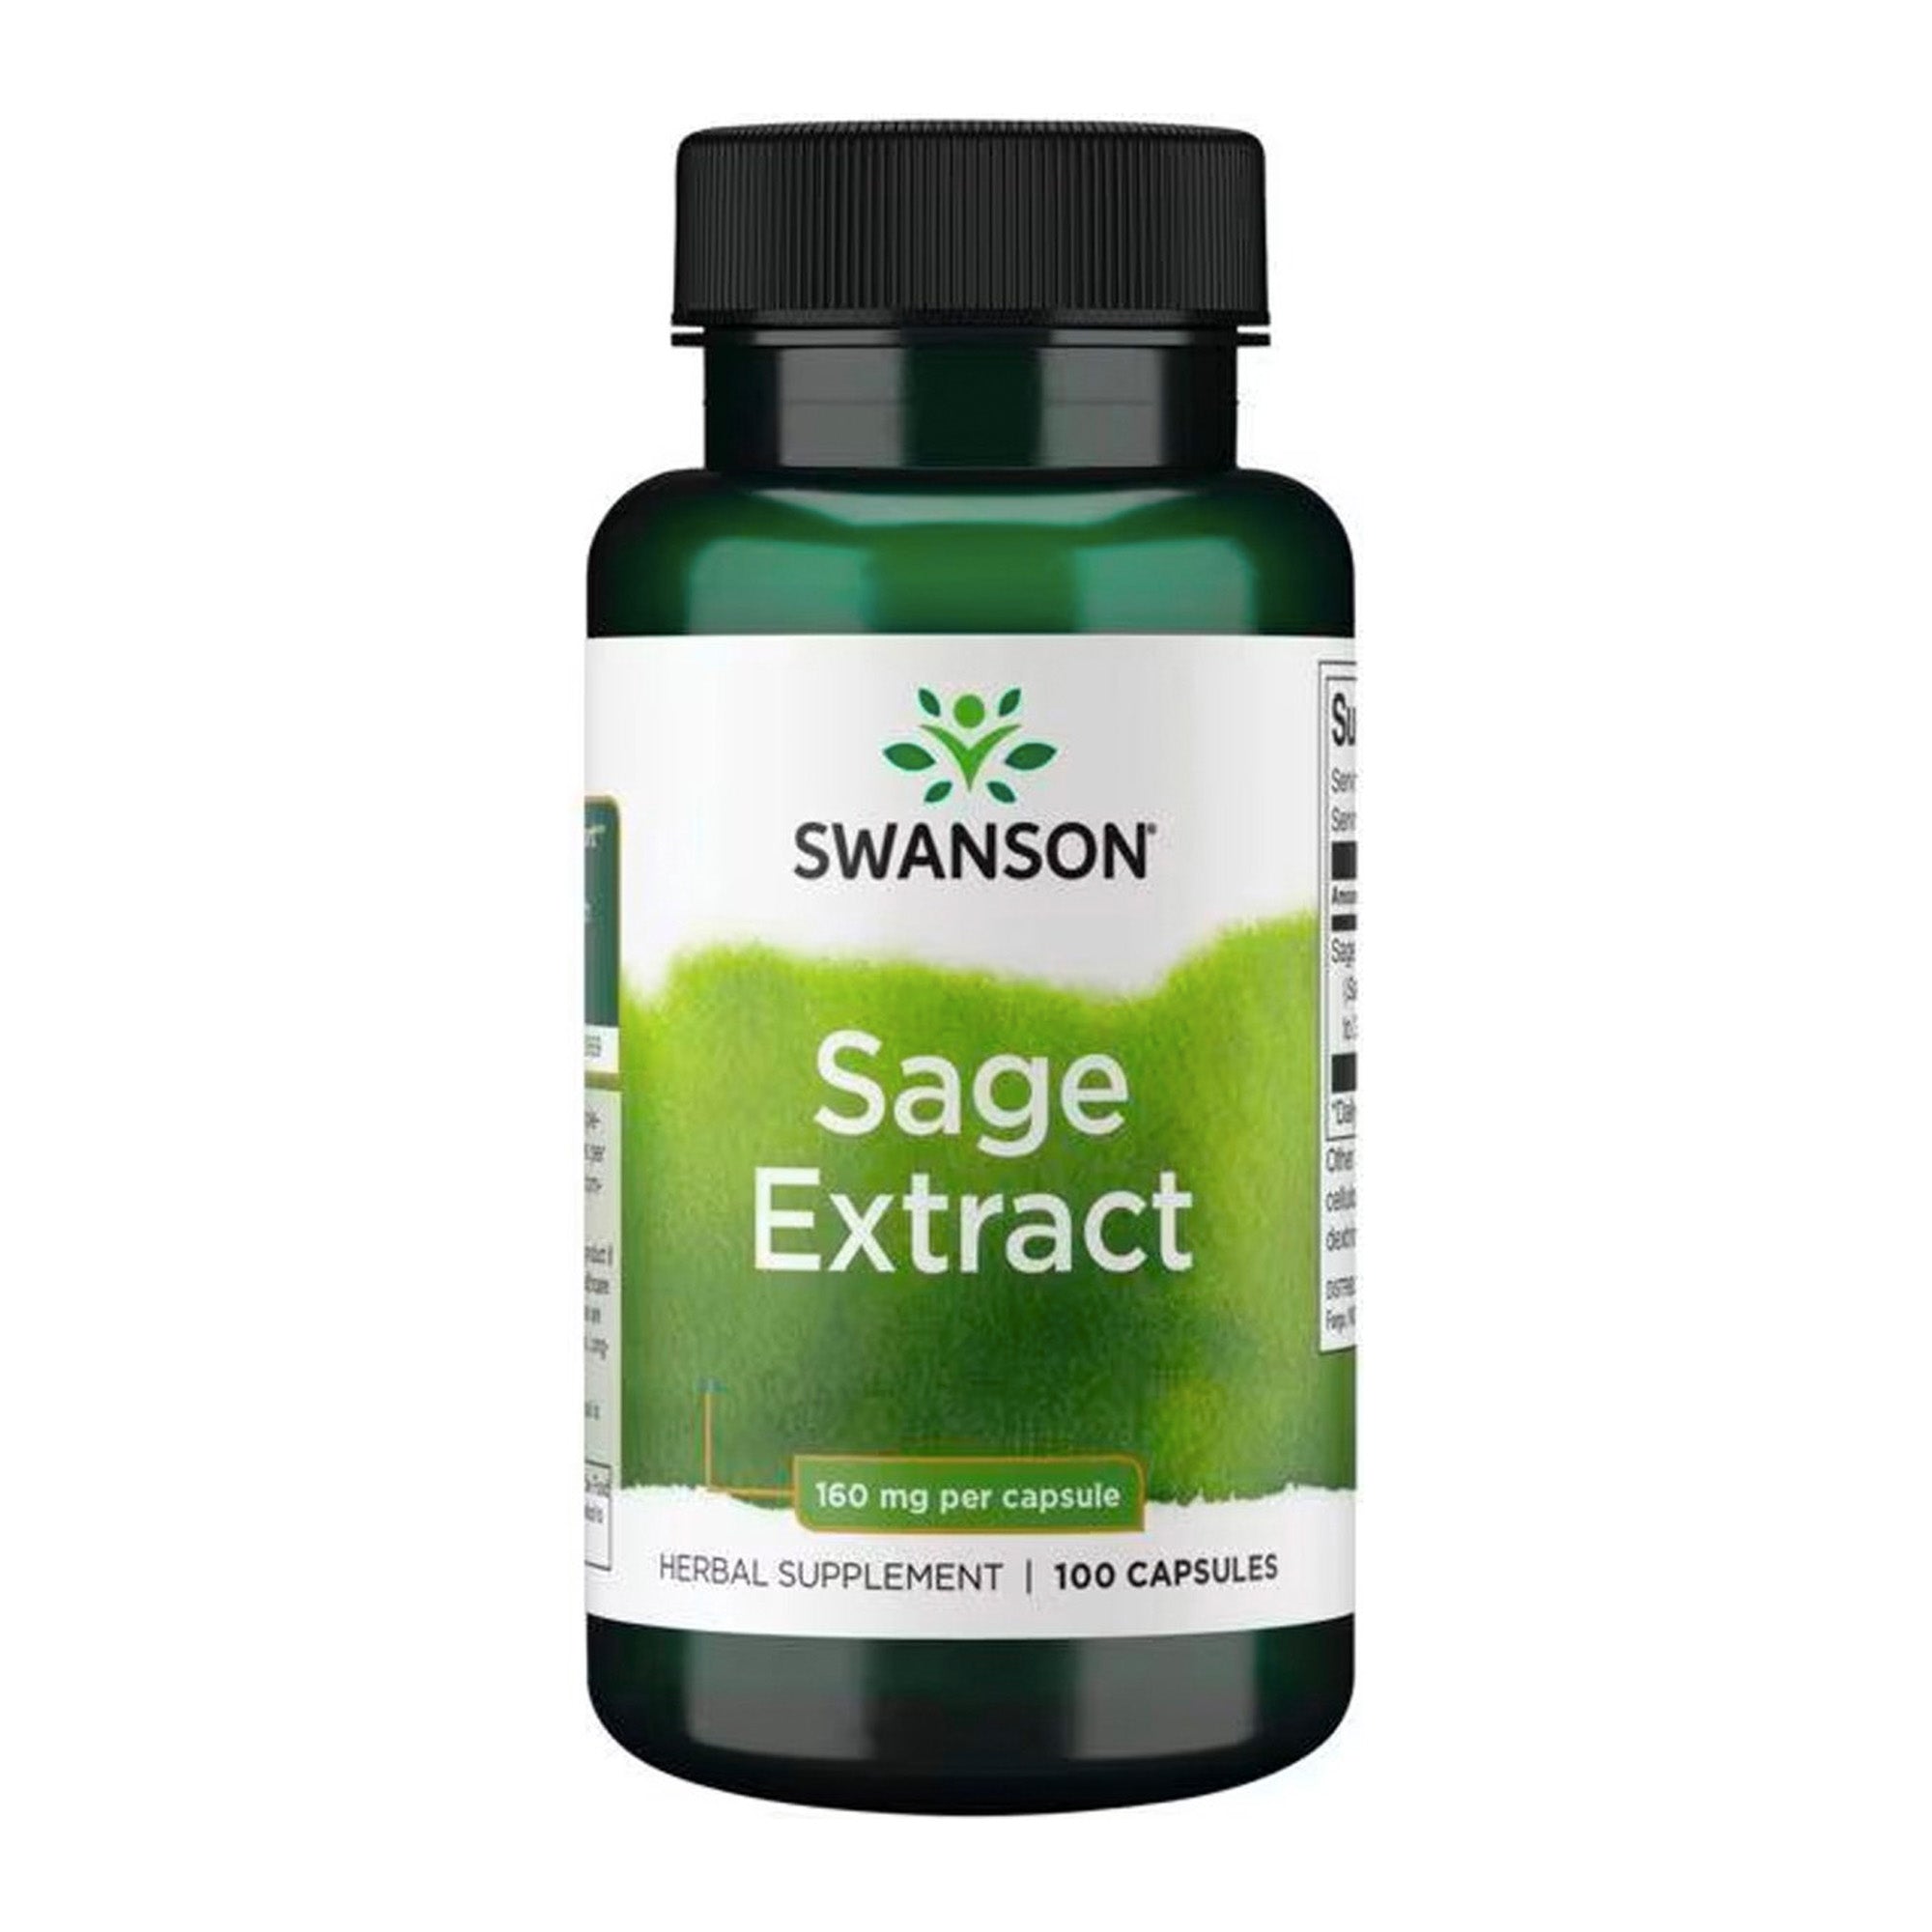 Swanson Salieblad Extract | 320mg Antioxidant | 100 Caps voor Cognitieve Gezondheid